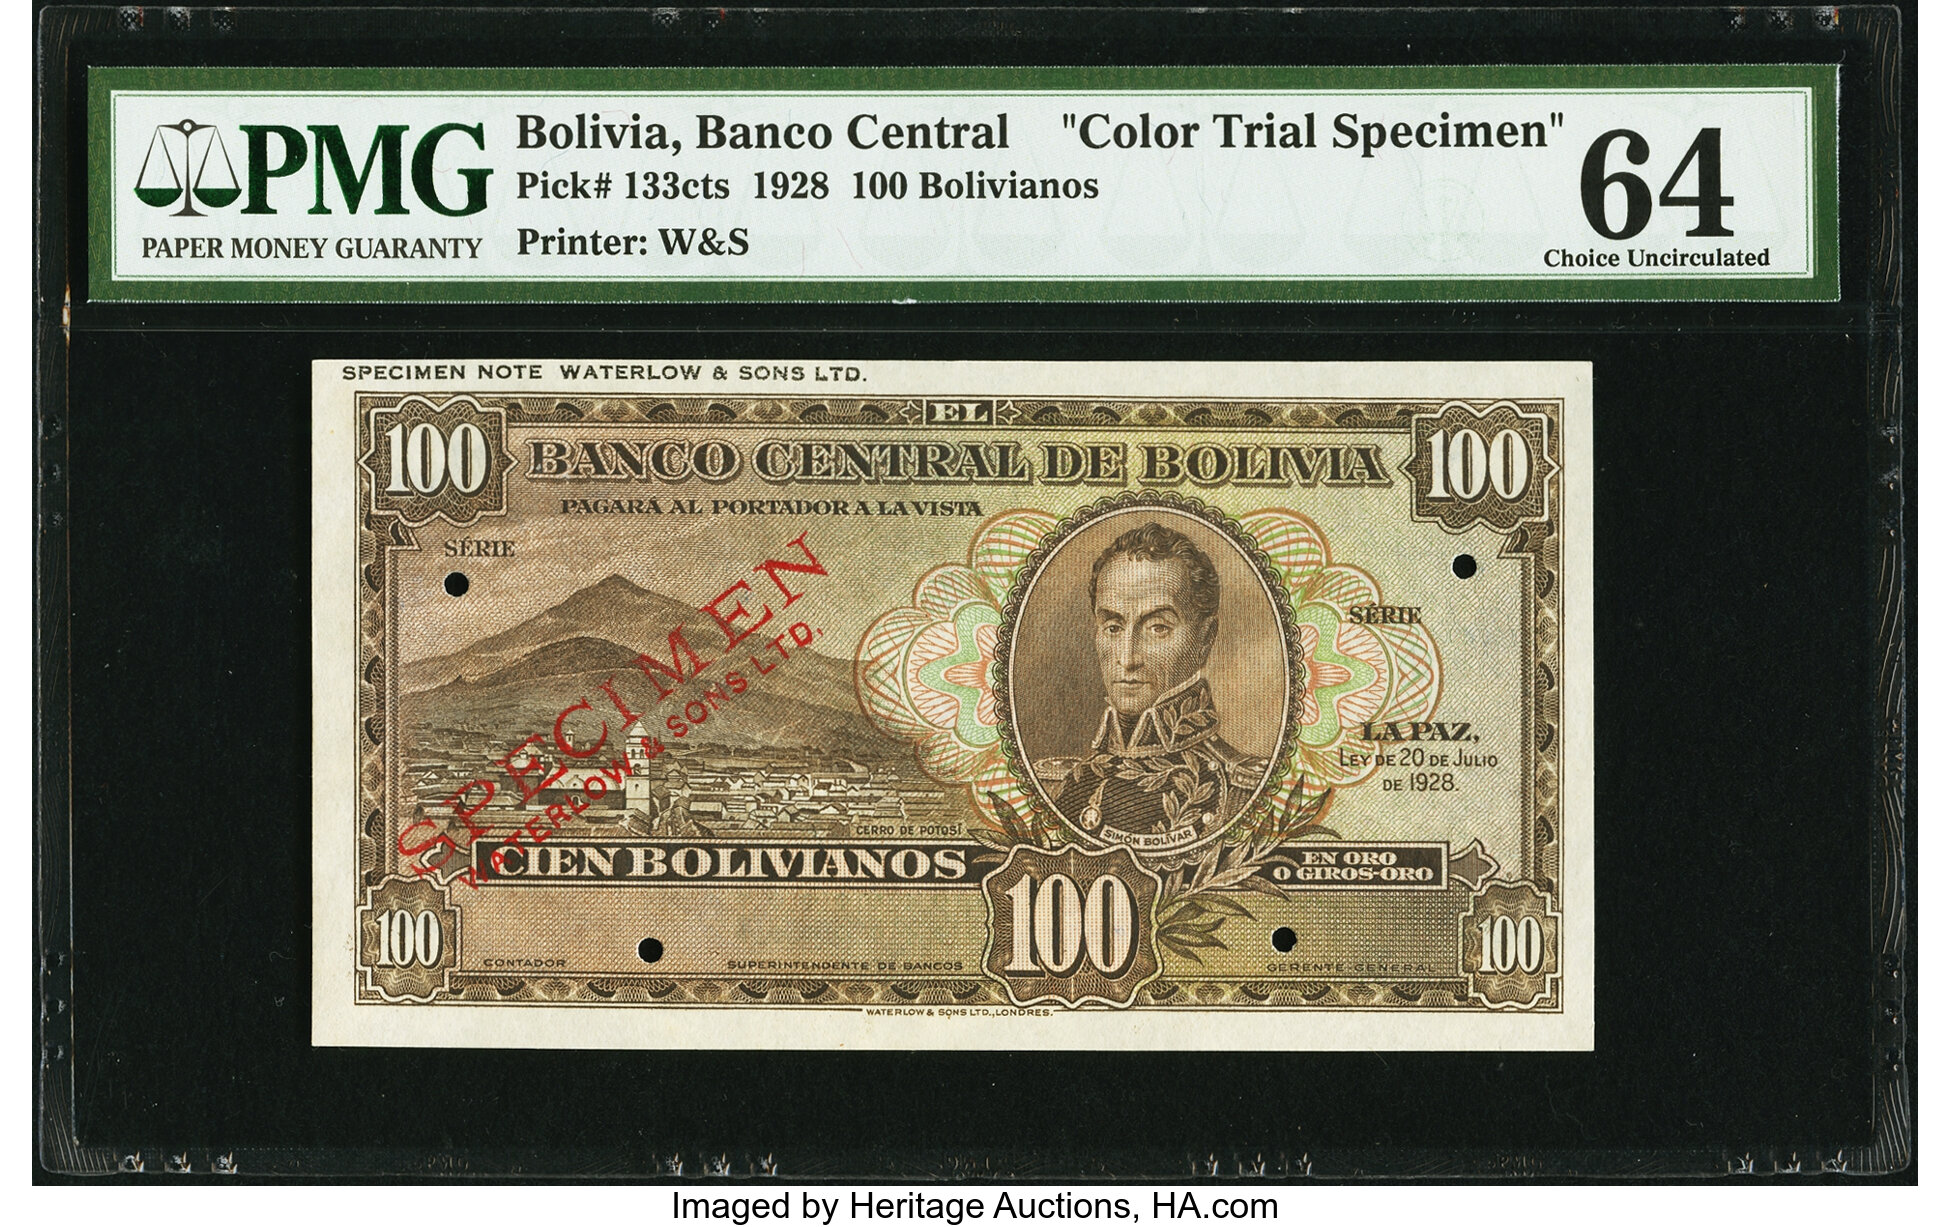 Bolivia Banco Central De Bolivia 100 Bolivianos L 1928 Pick